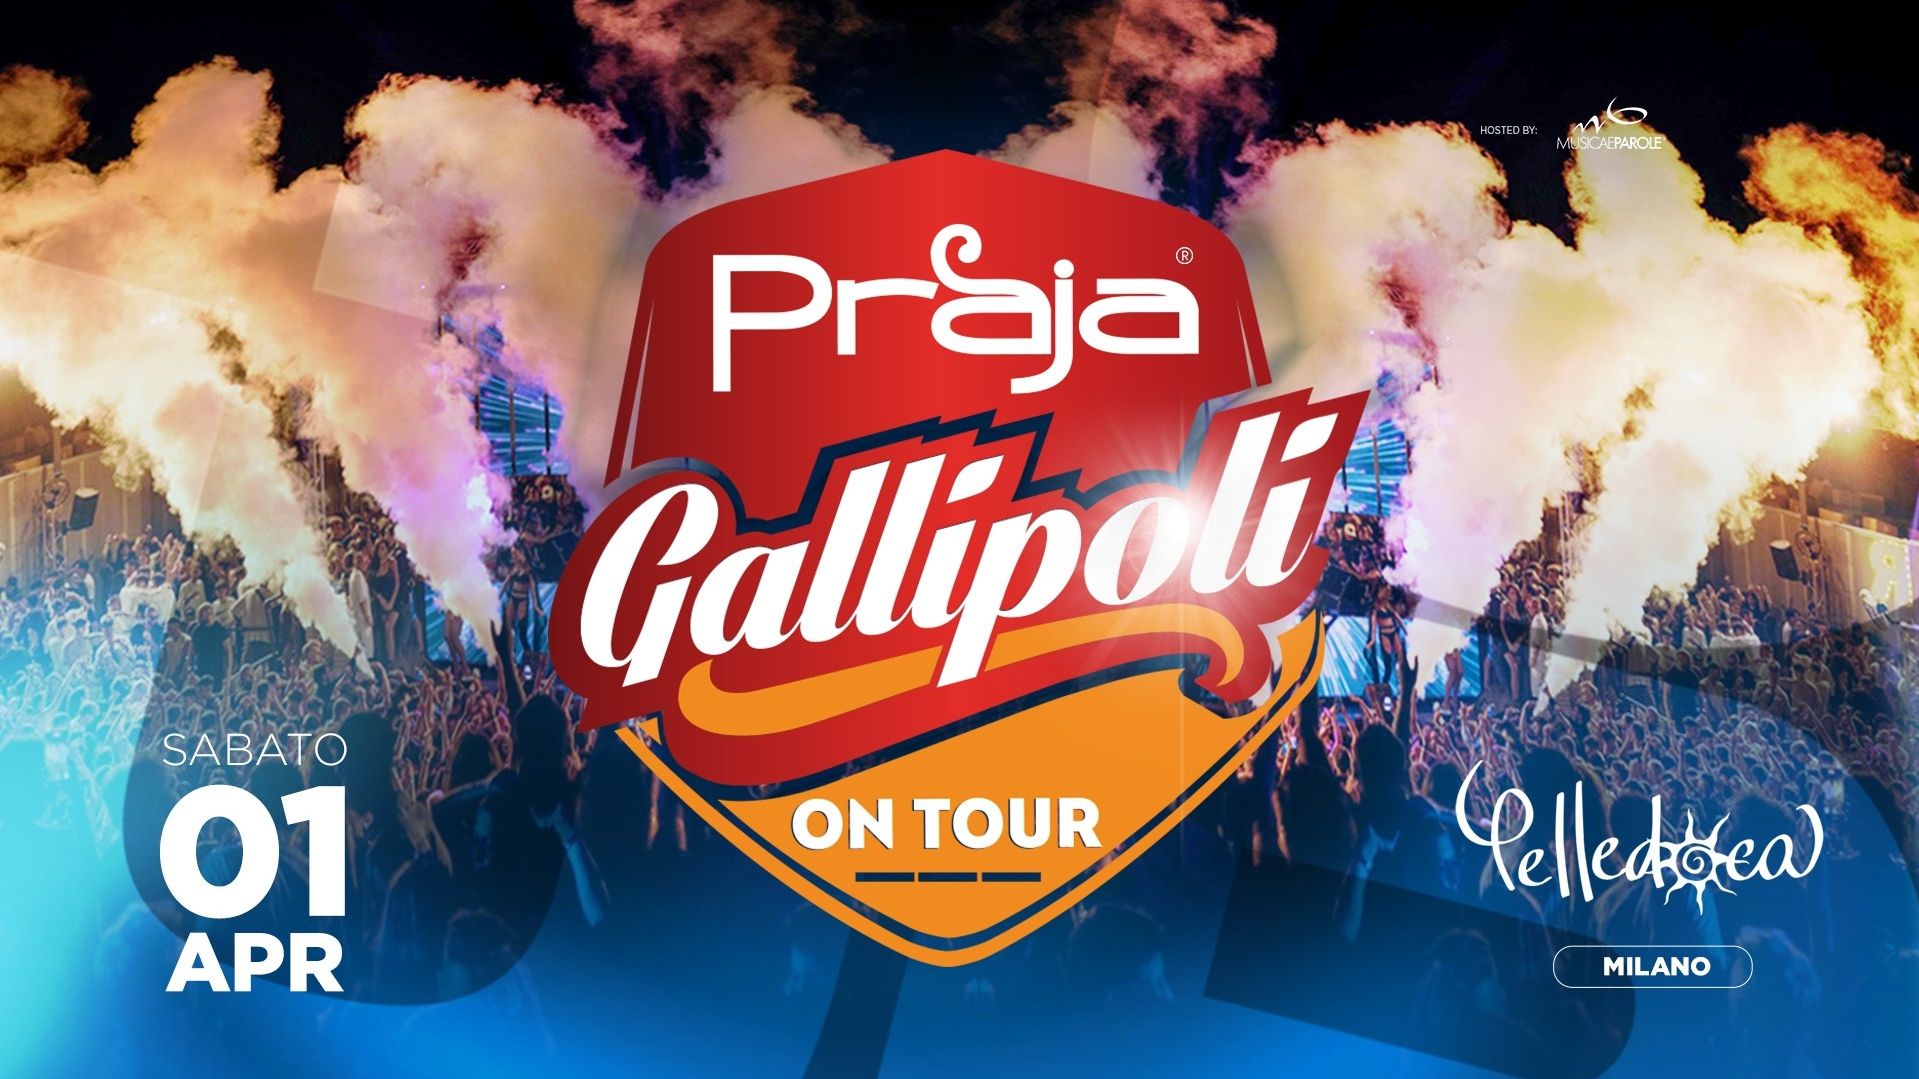 Praja Gallipoli® on Tour